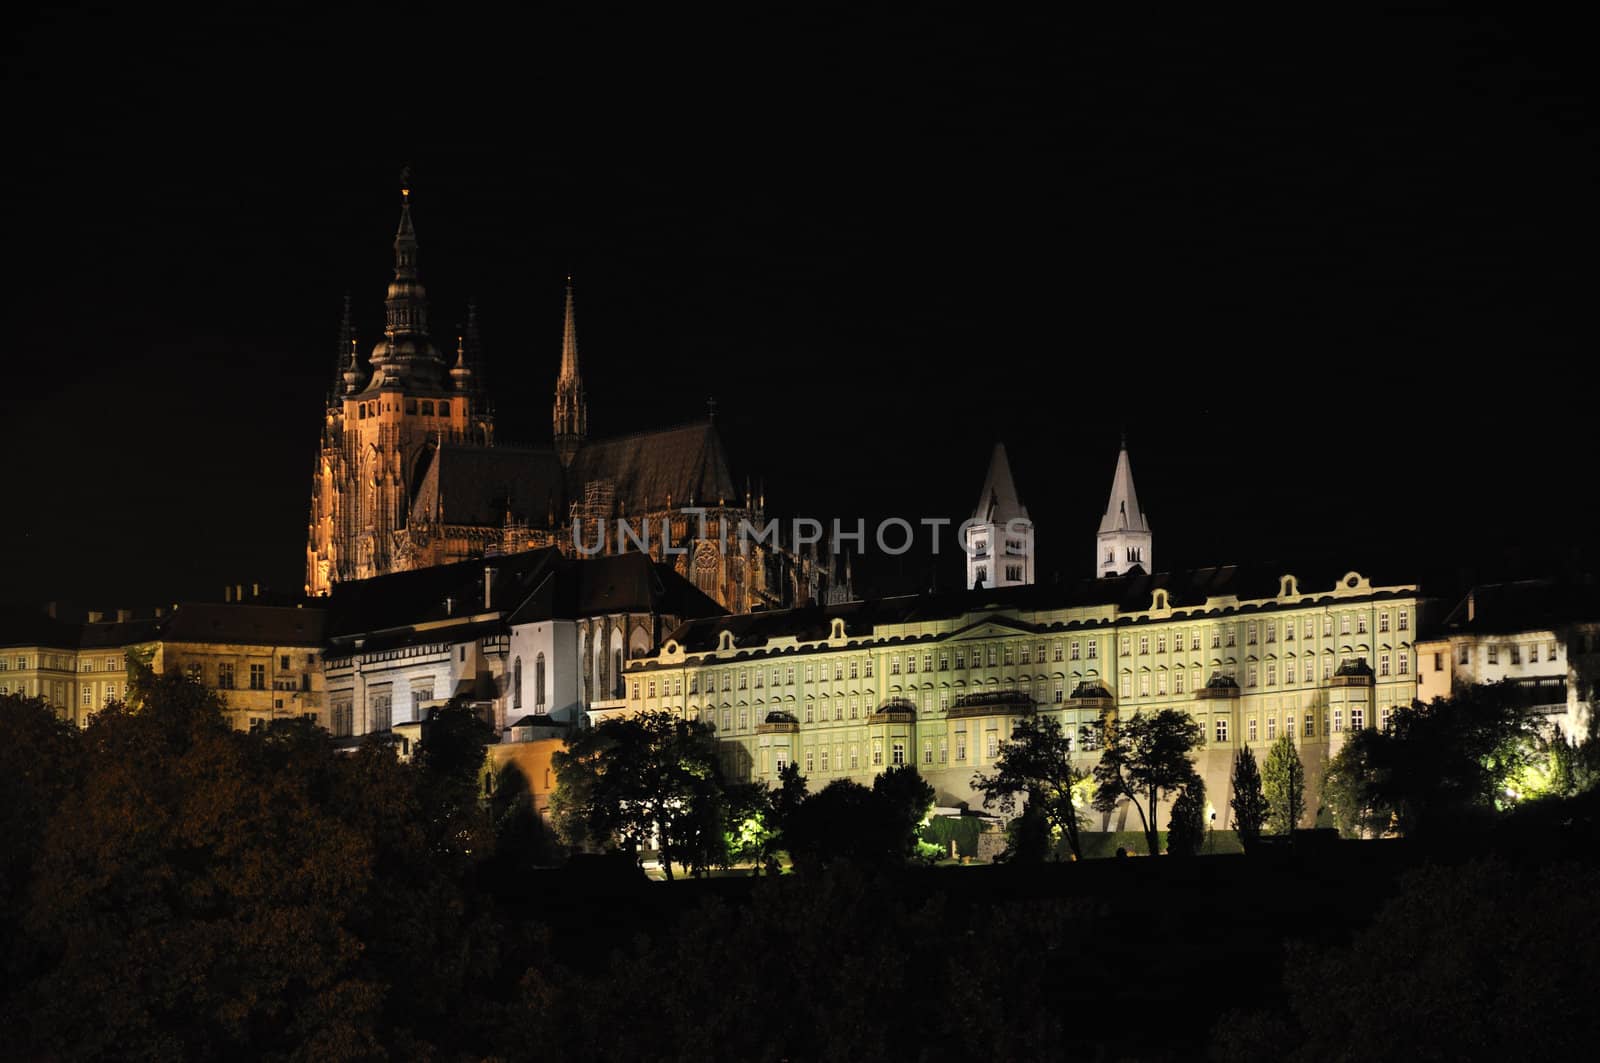 Prague castle - night view by vyskoczilova